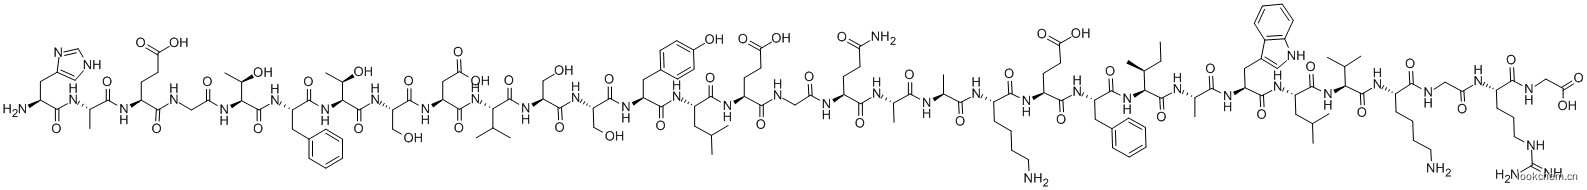 醋酸人胰高血糖素样肽-1